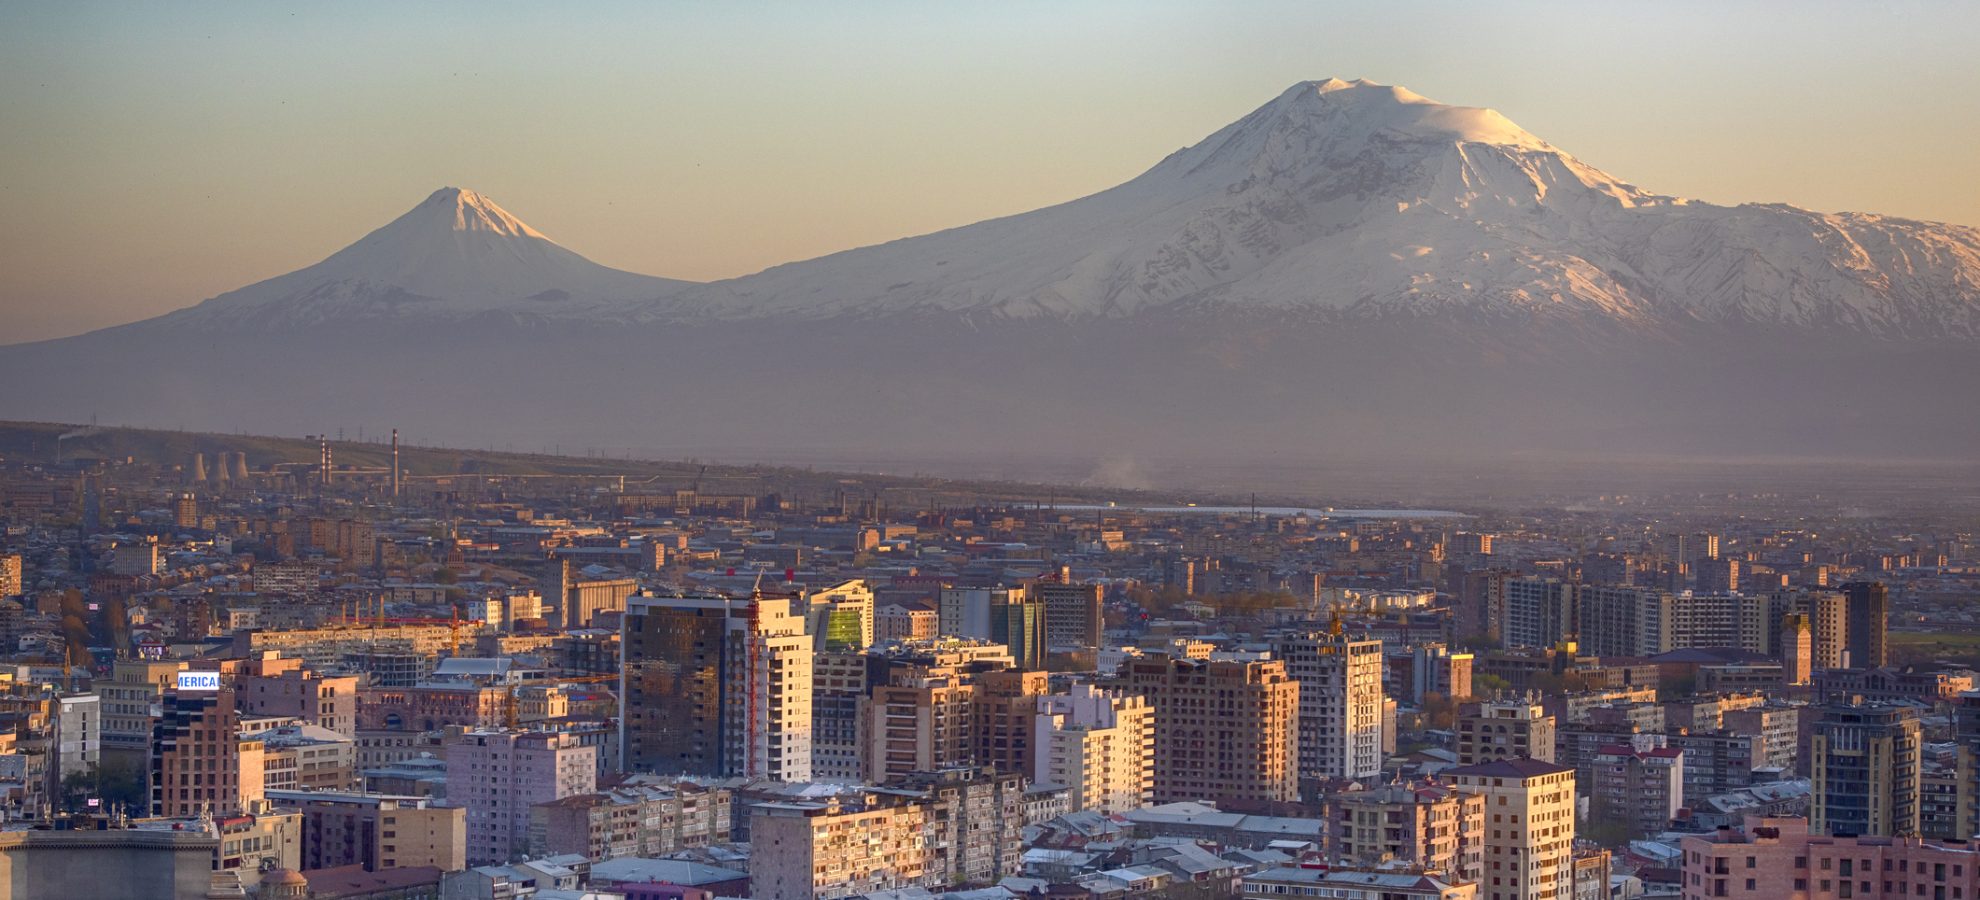 Yerevan, de hoofdstad van Armenië in de voorkant van Mt. Ararat